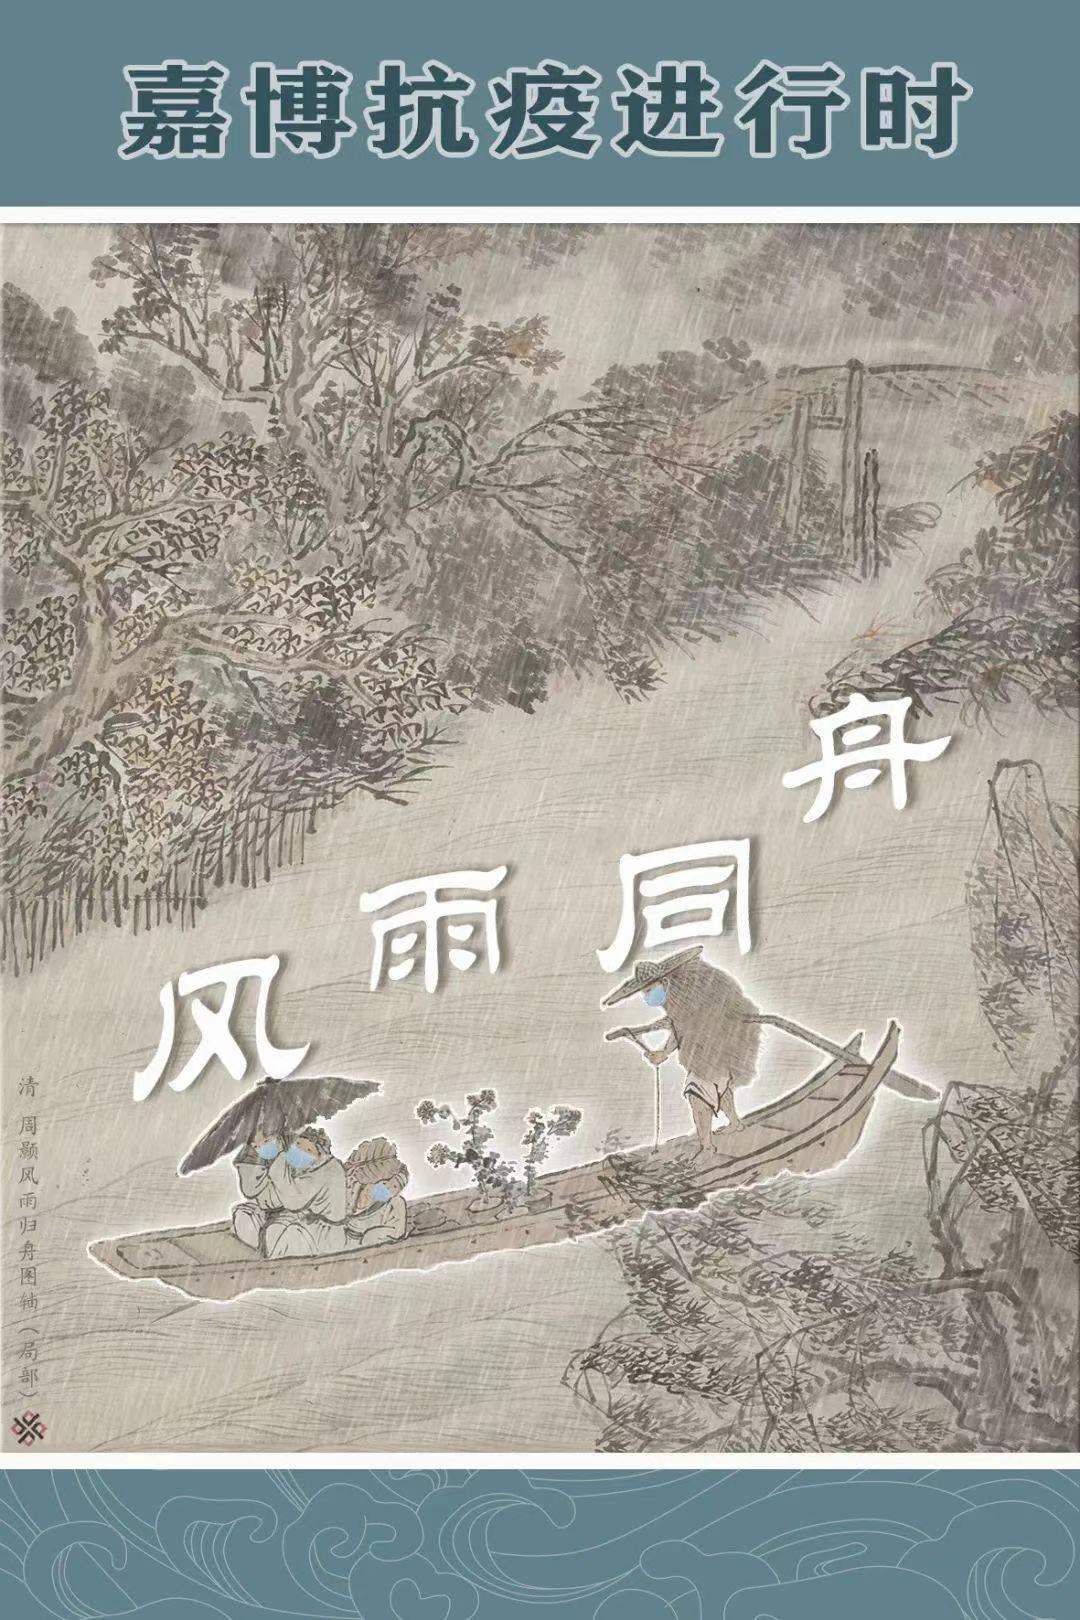 嘉定博物馆为了宣传防疫，结合馆藏文物，做了一系列抗疫海报宣传